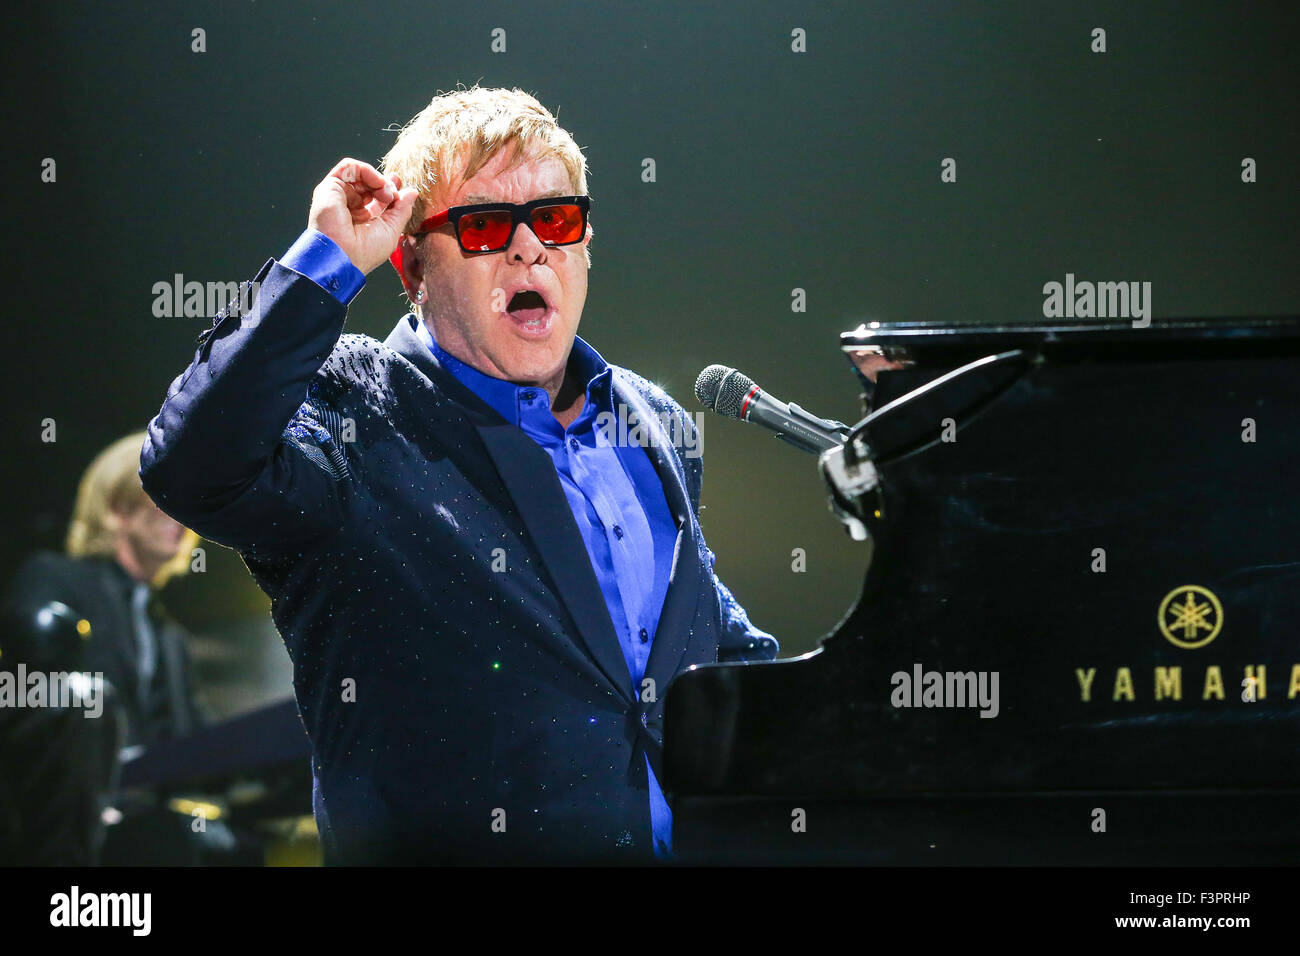 Music Artist Sir Elton John performs on his 2015 World Tour Stock Photo